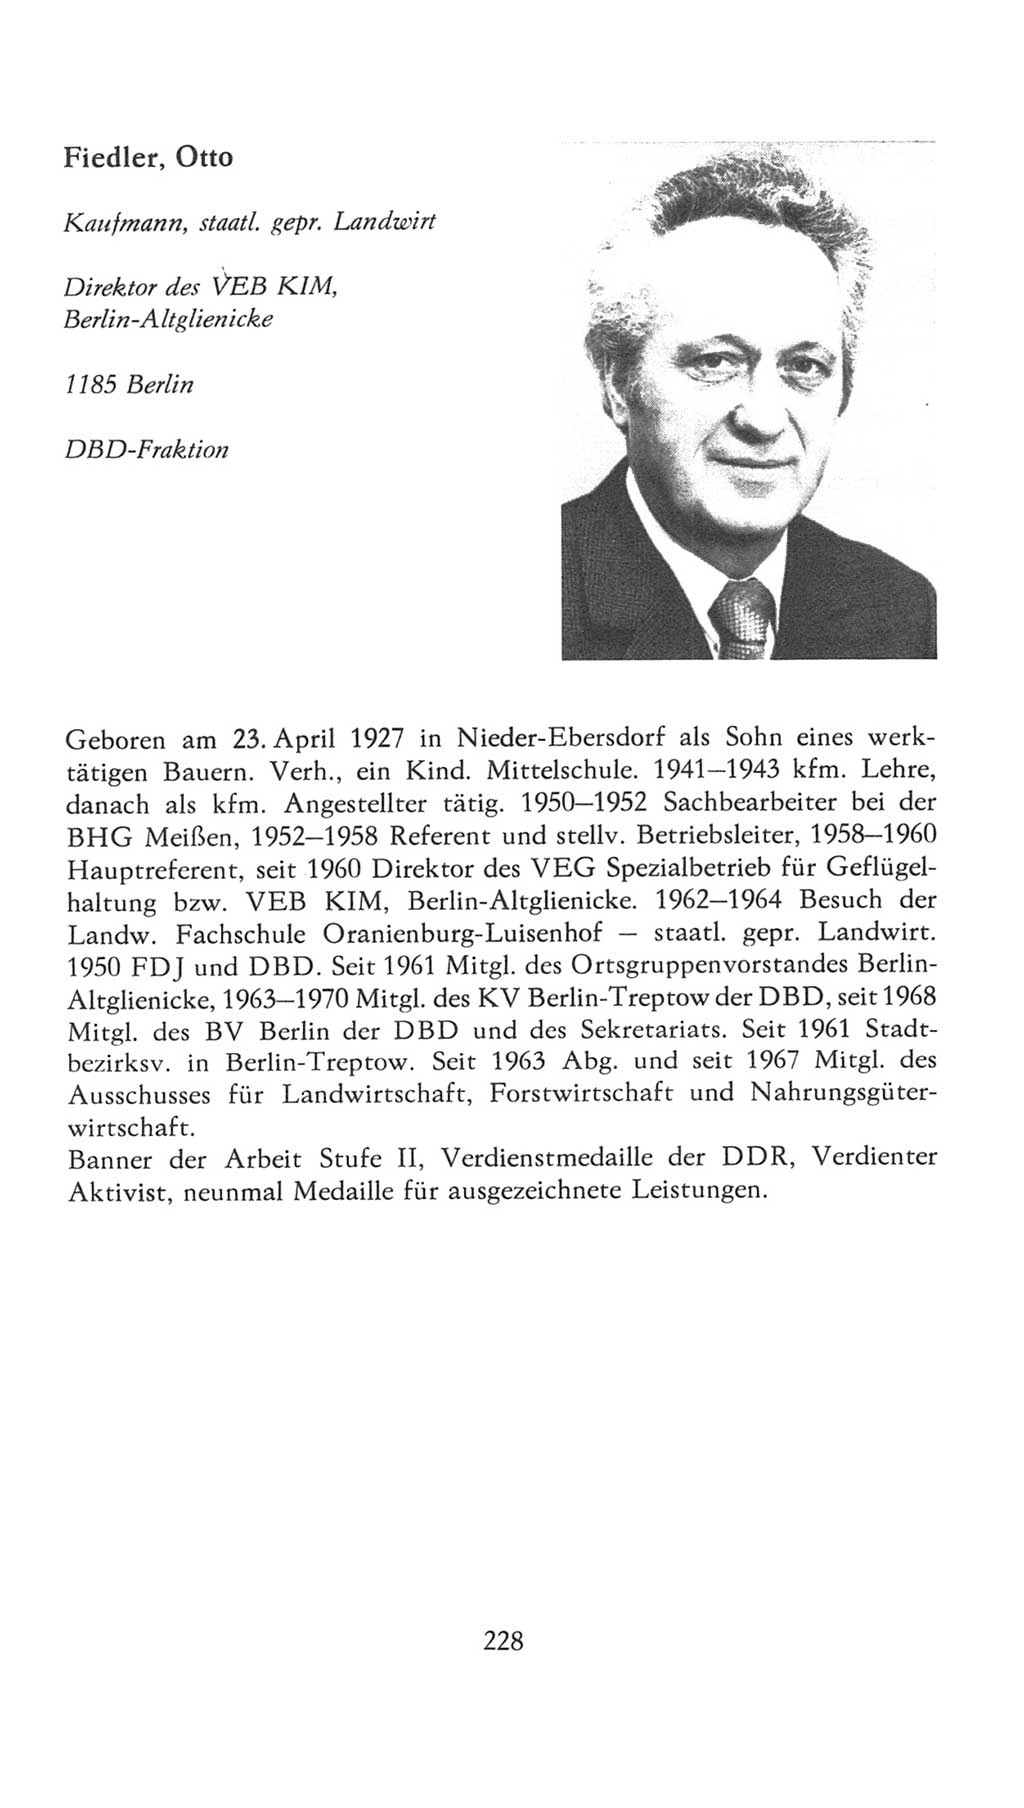 Volkskammer (VK) der Deutschen Demokratischen Republik (DDR), 7. Wahlperiode 1976-1981, Seite 228 (VK. DDR 7. WP. 1976-1981, S. 228)